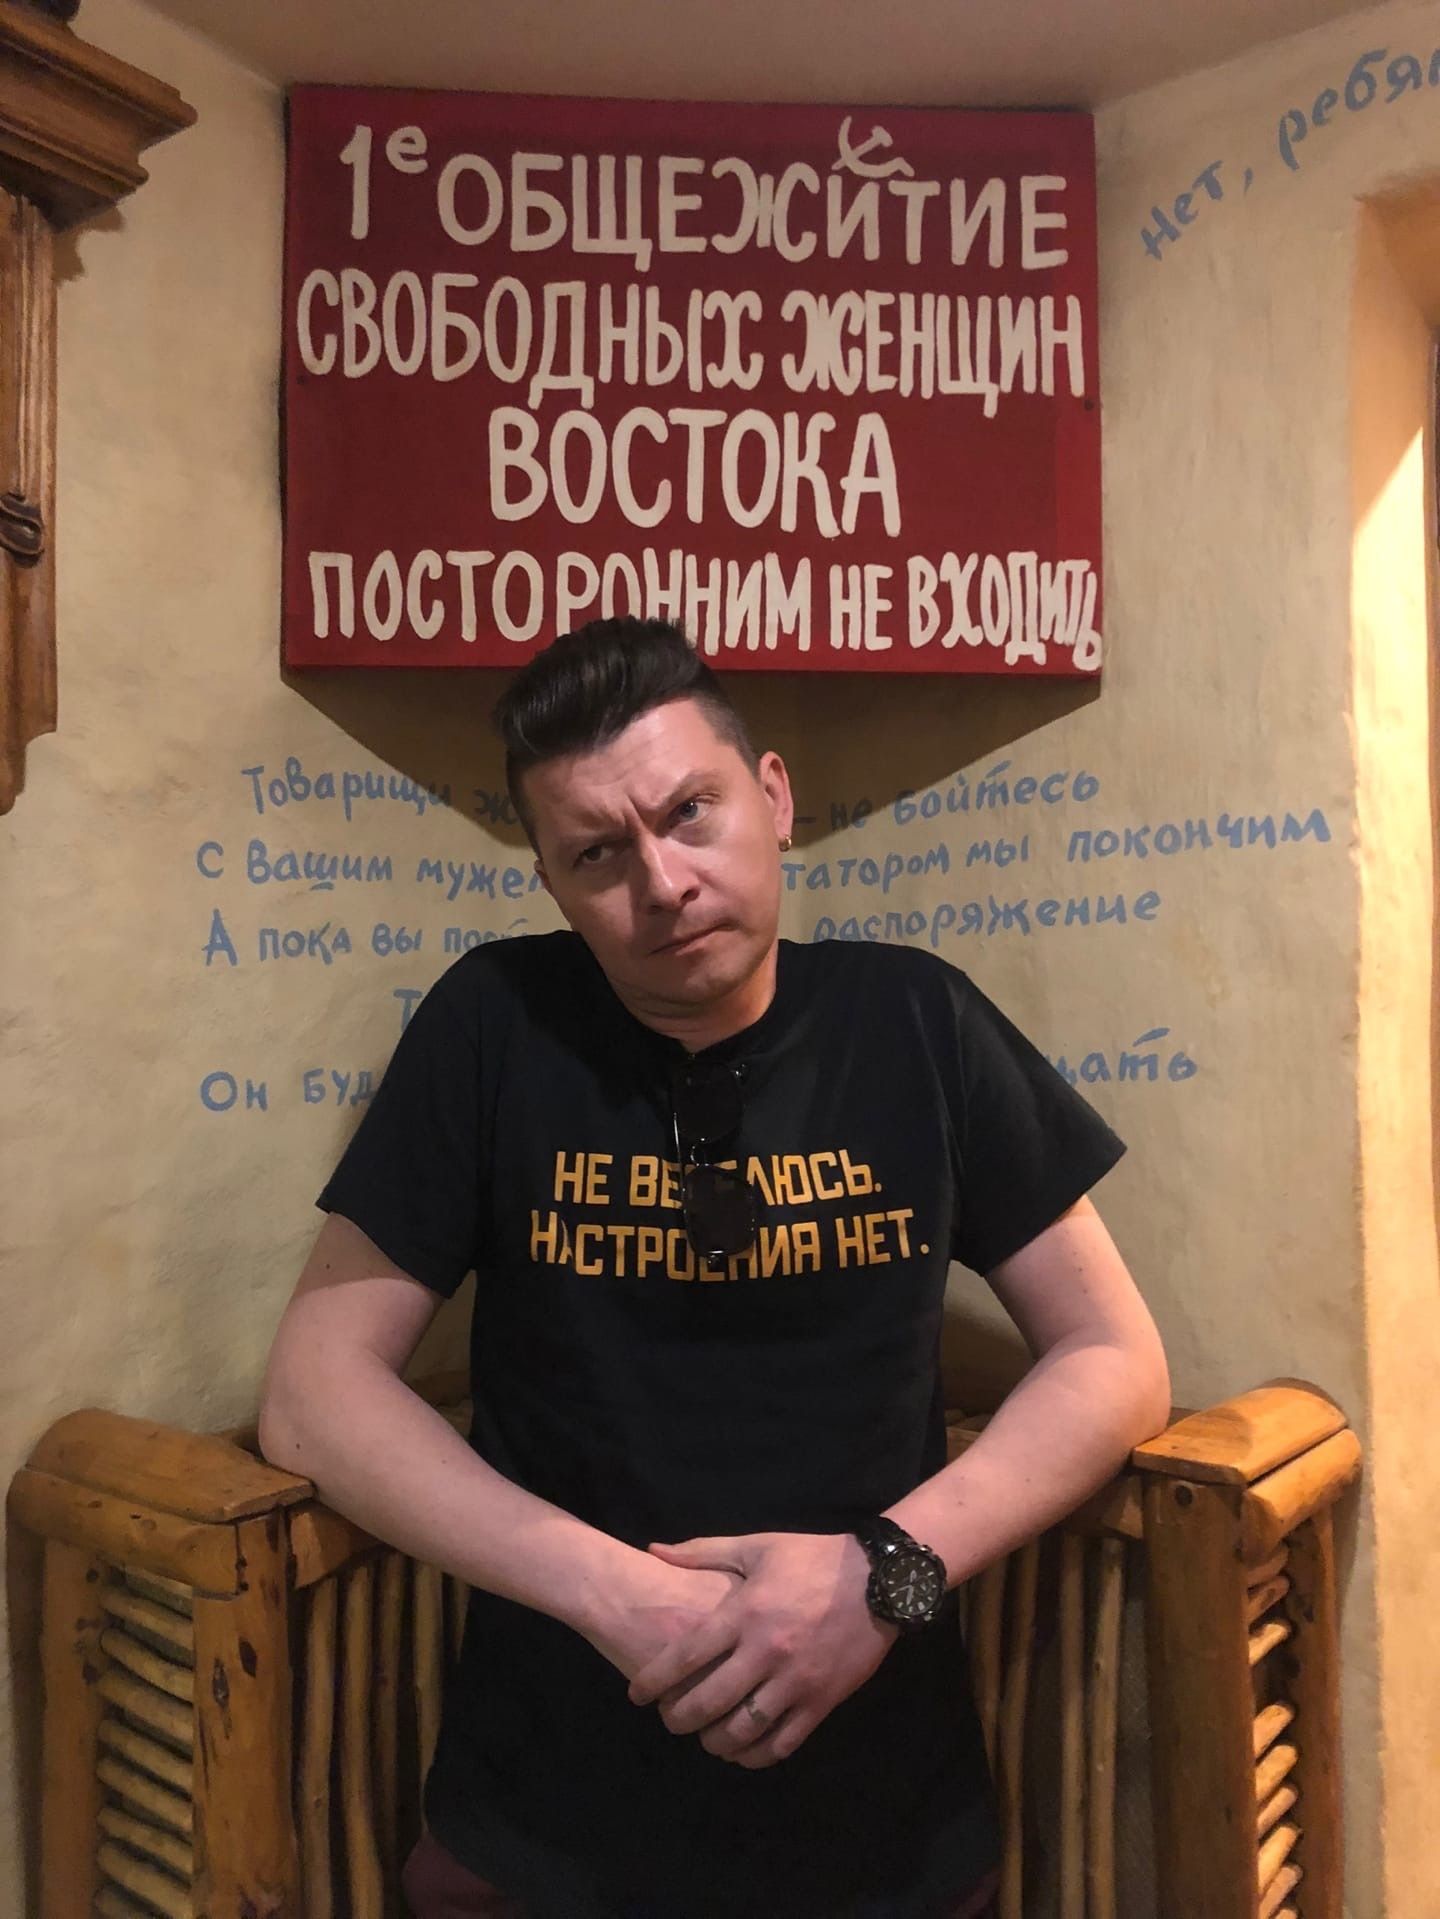 Москва – для сильных духом. Как Борис Солдатов из Васильево стал ведущим редактором РЕН-ТВ